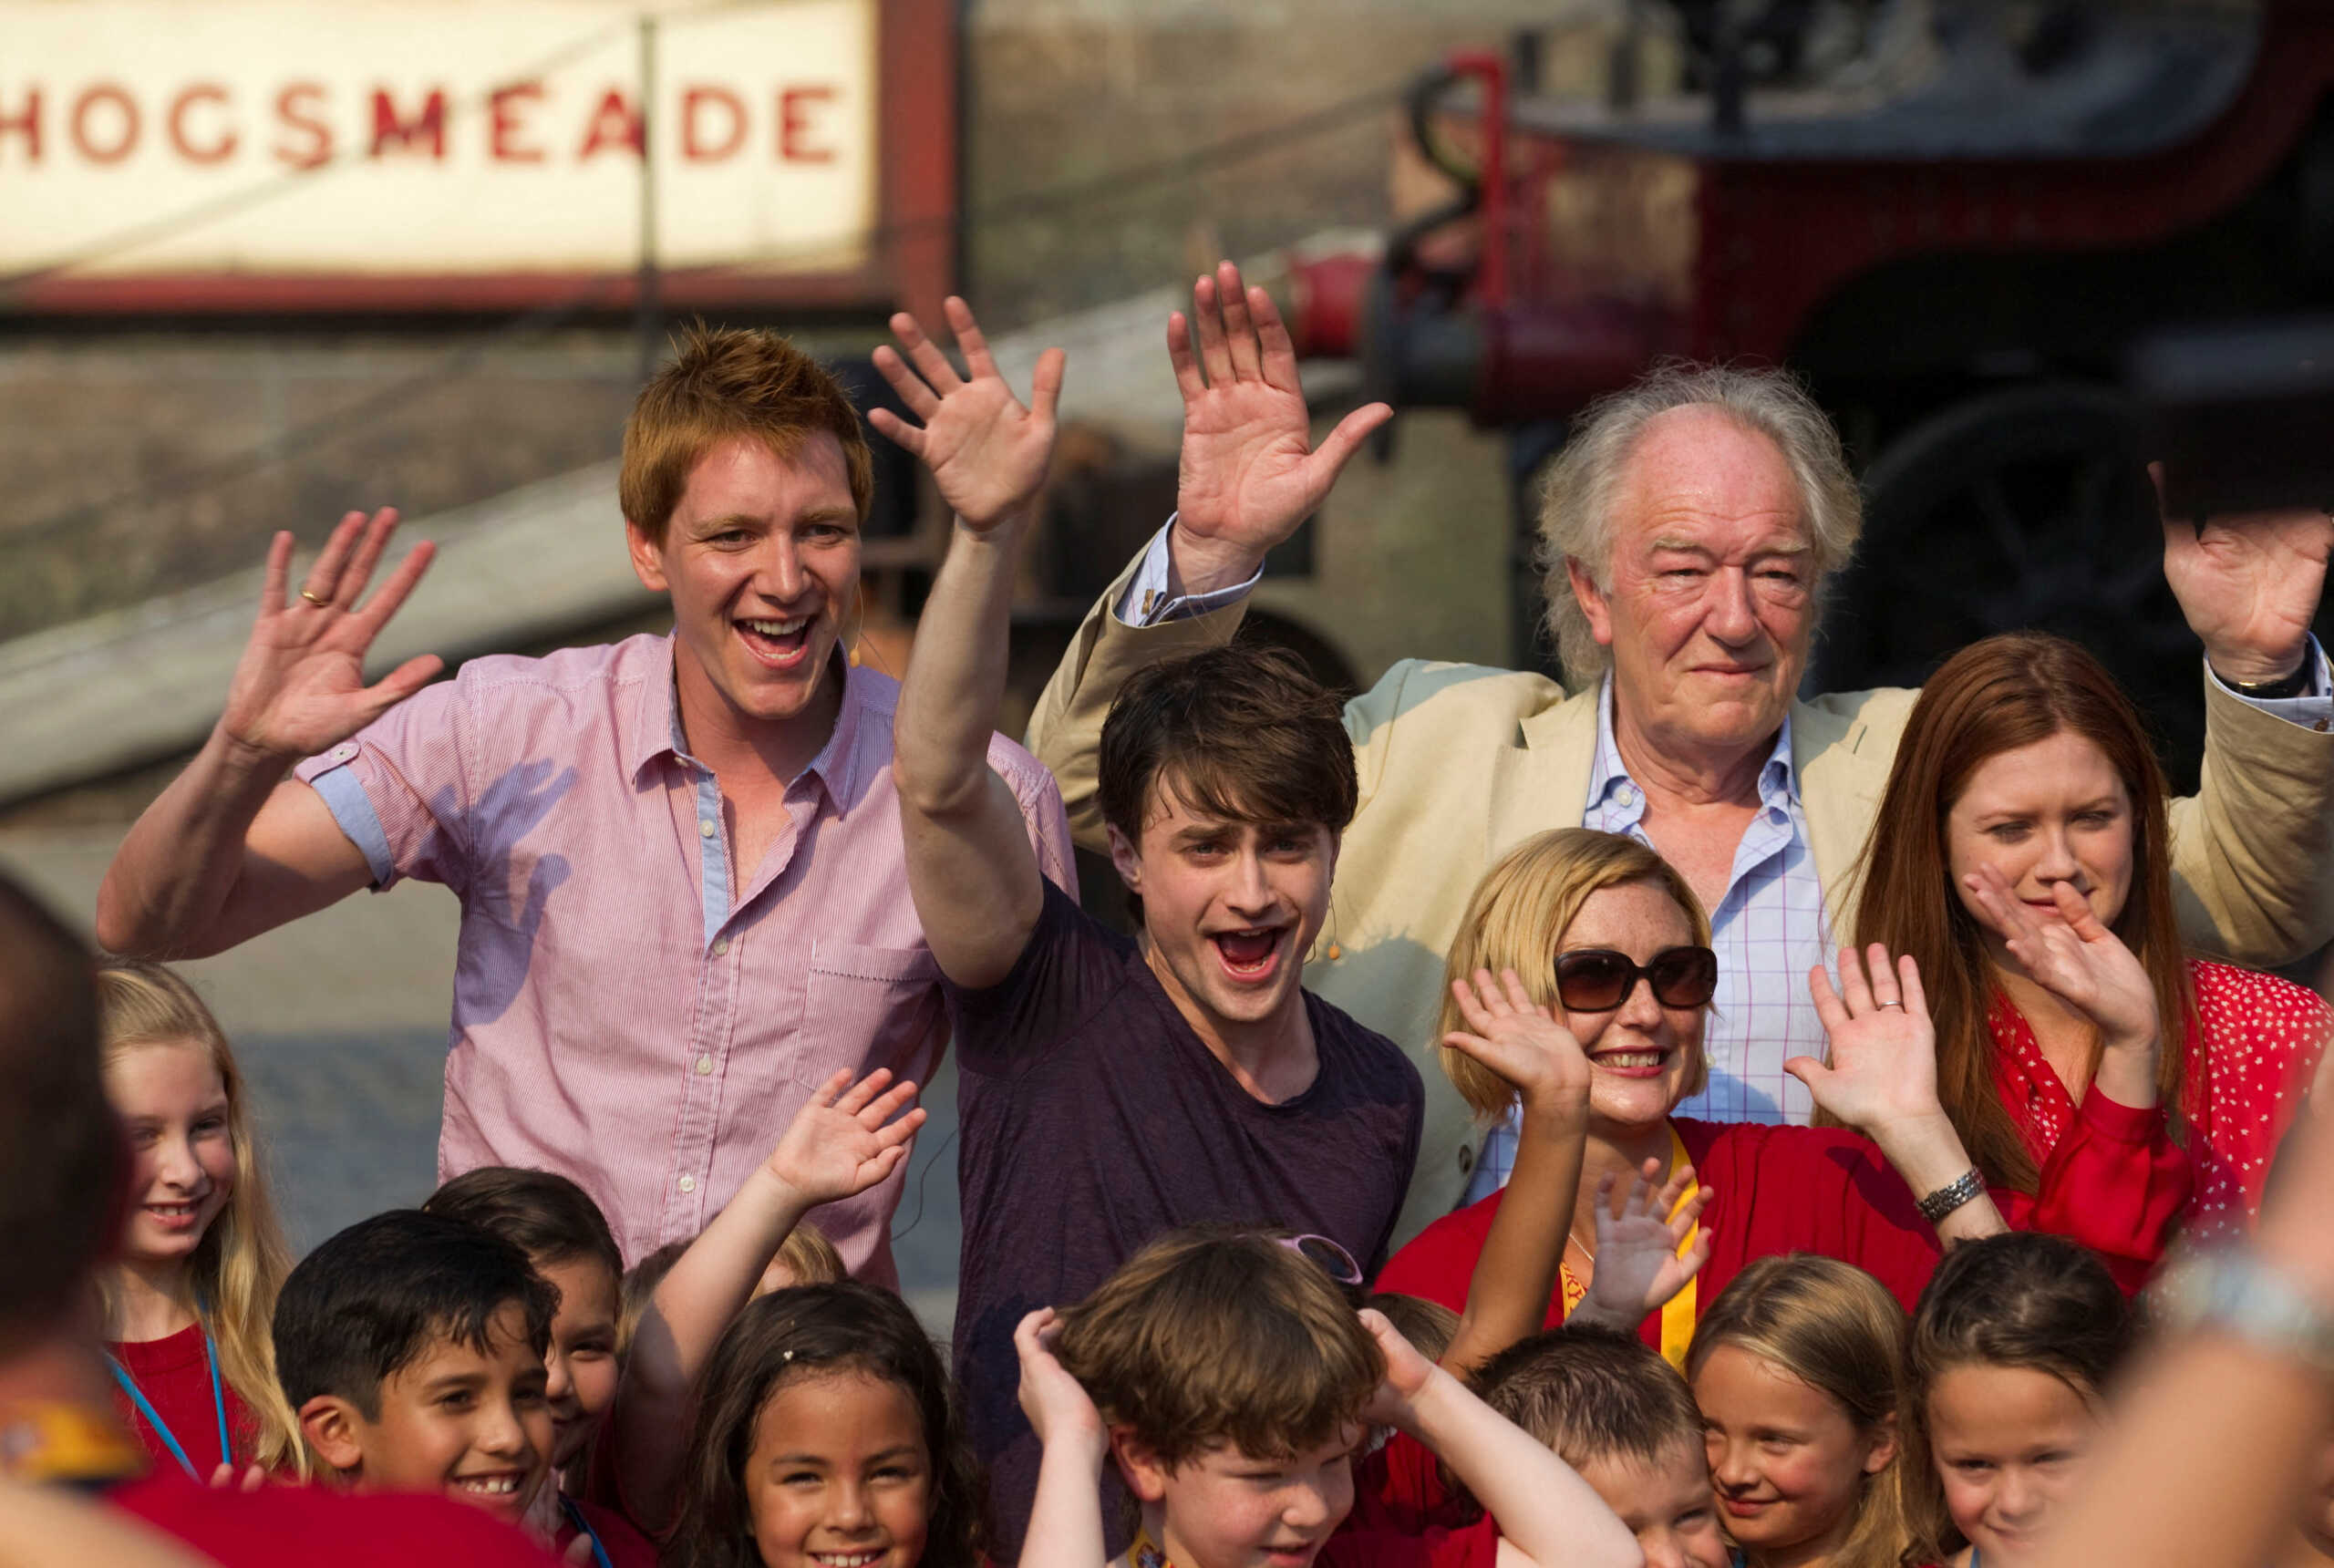 Πέθανε ο ηθοποιός Sir Michael Gambon: Γνωστός για τον ρόλο του ως Albus Dumbledore στις ταινίες του Harry Potter